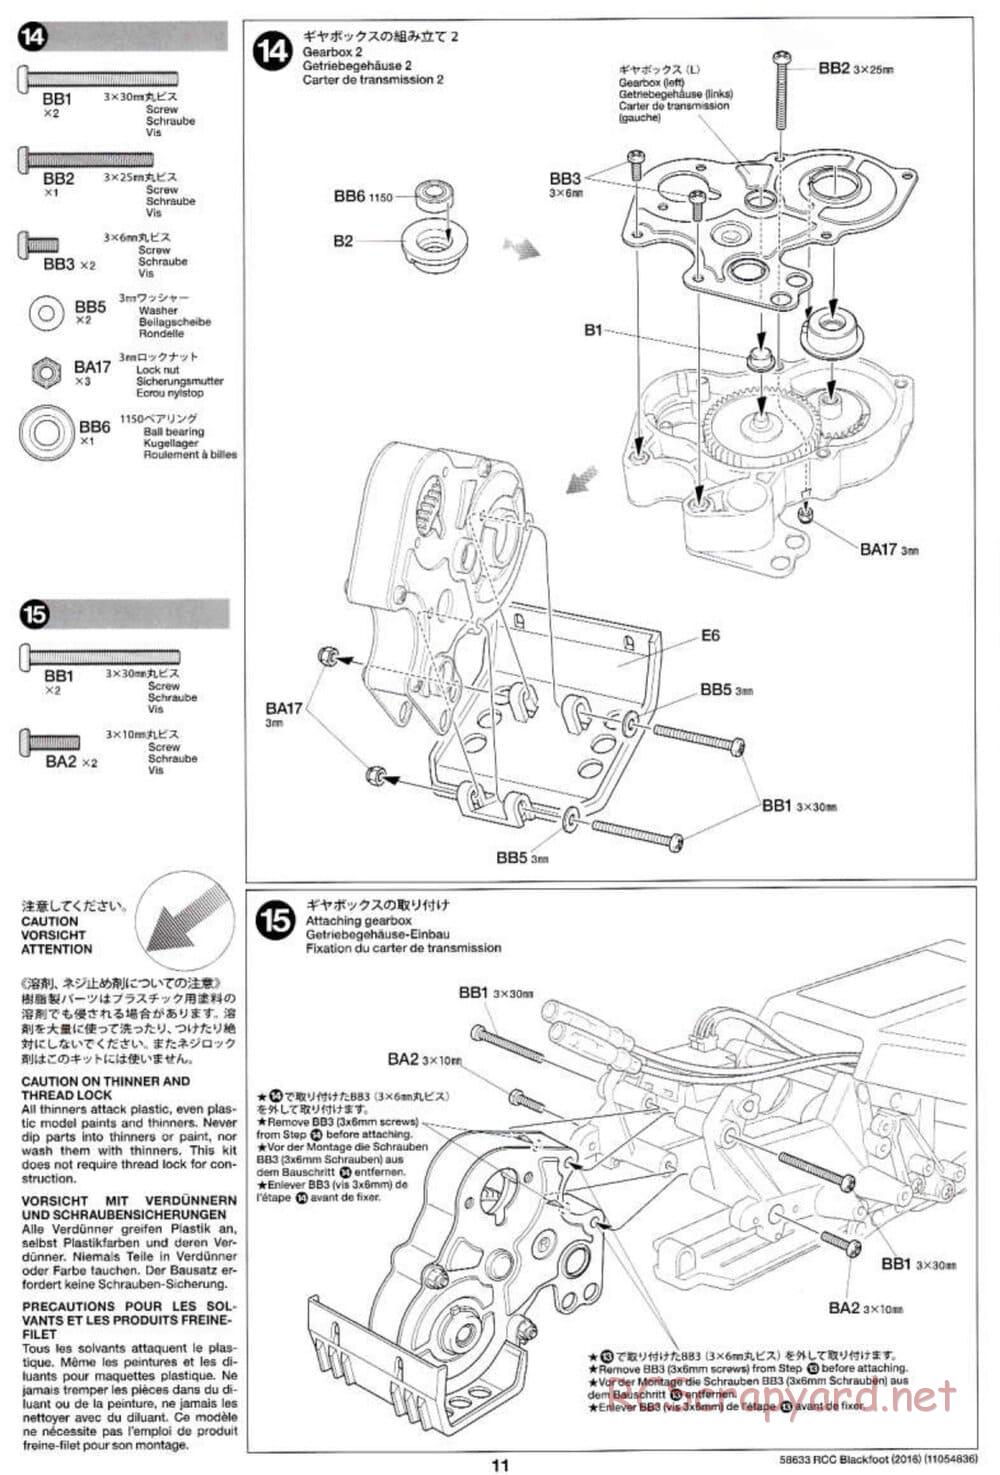 Tamiya - Blackfoot 2016 - ORV Chassis - Manual - Page 11